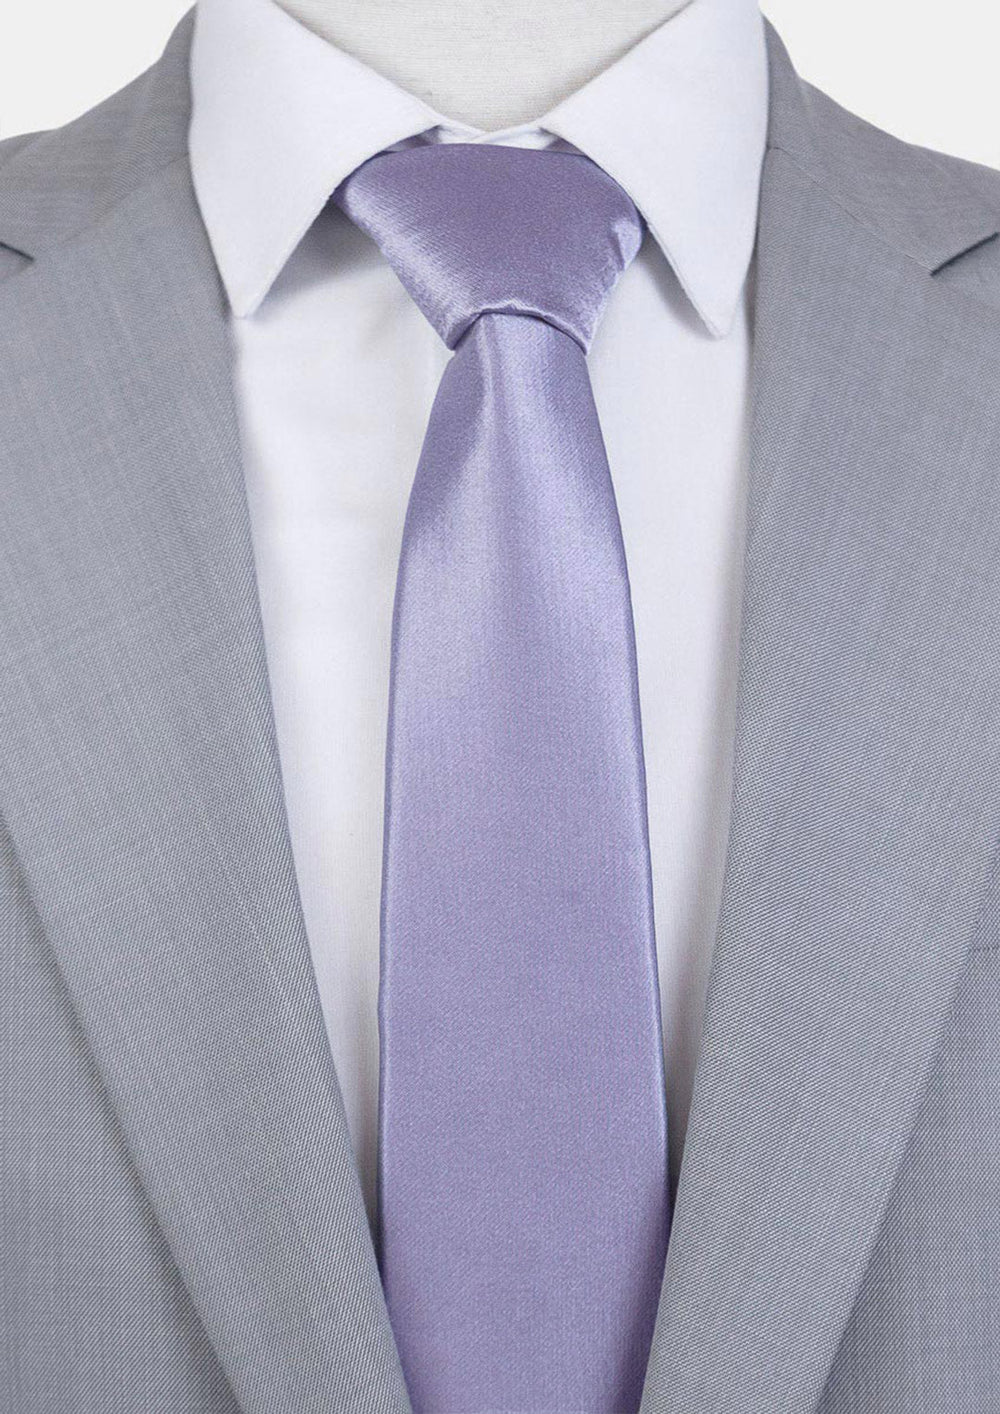 Thistle Purple Tie - SARTORO